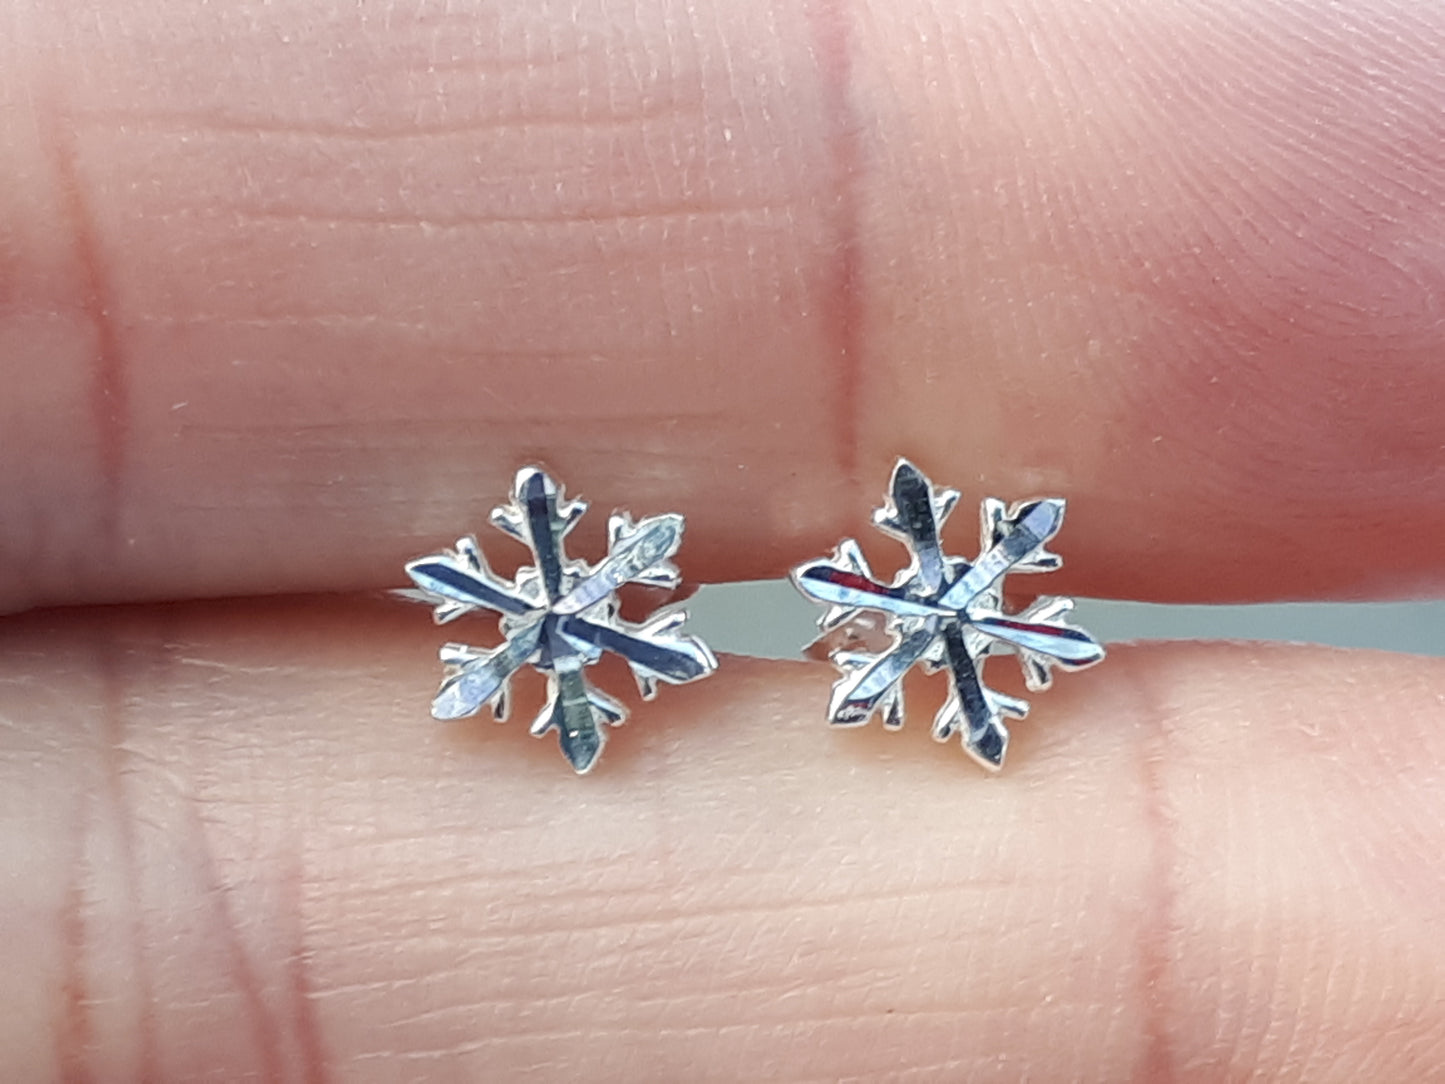 Snowflake earrings in sterling silver.